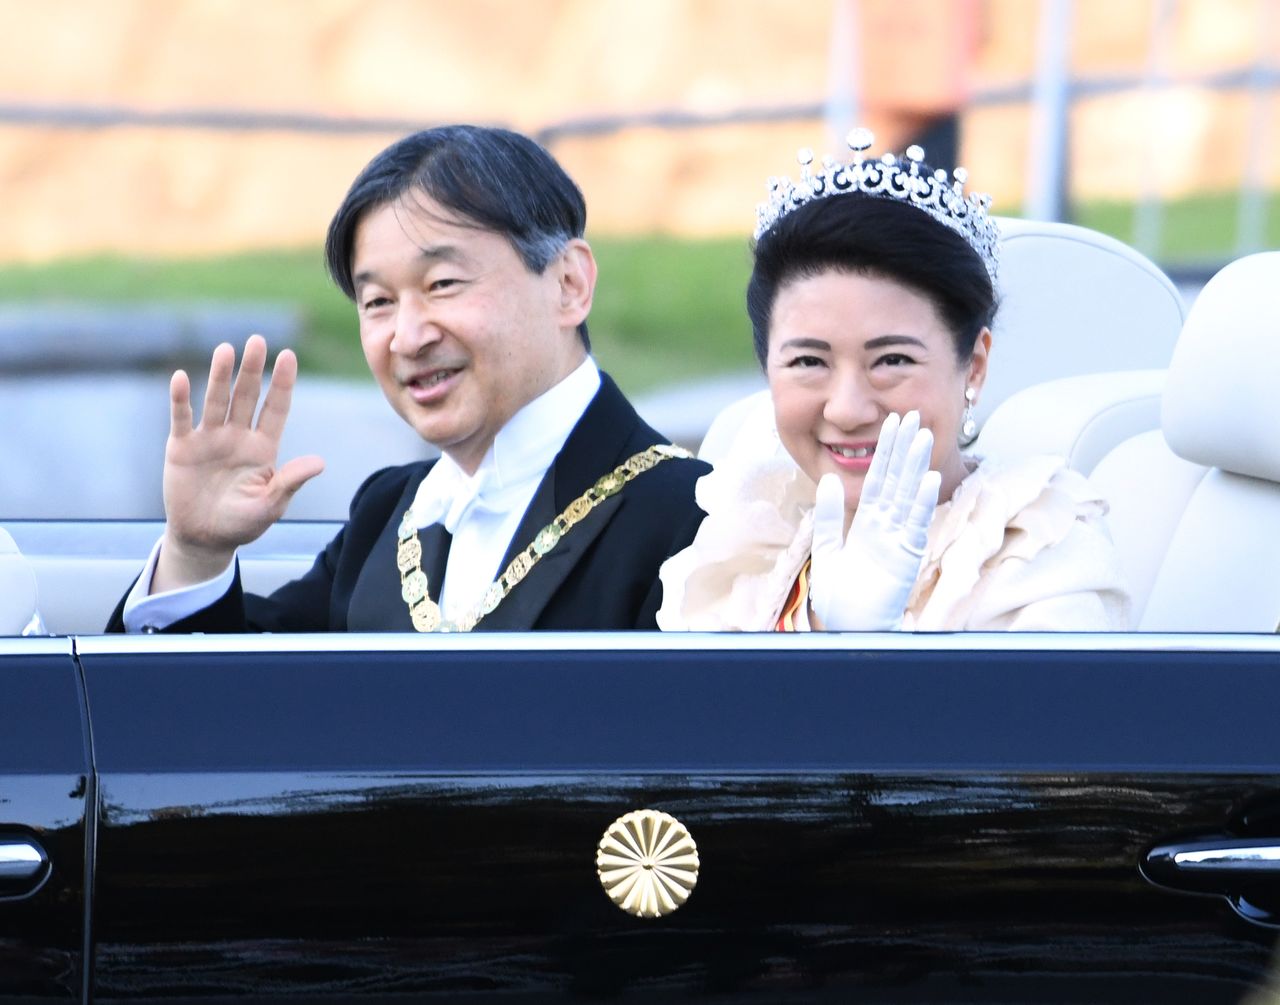 L’empereur Naruhito est vêtu d’un costume noir queue-de-pie et paré du collier de l’ordre suprême du chrysanthème. L’impératrice Masako est quant à elle habillée d’une longue robe blanche. Elle porte la tiare impériale et l’ordre de la couronne précieuse.